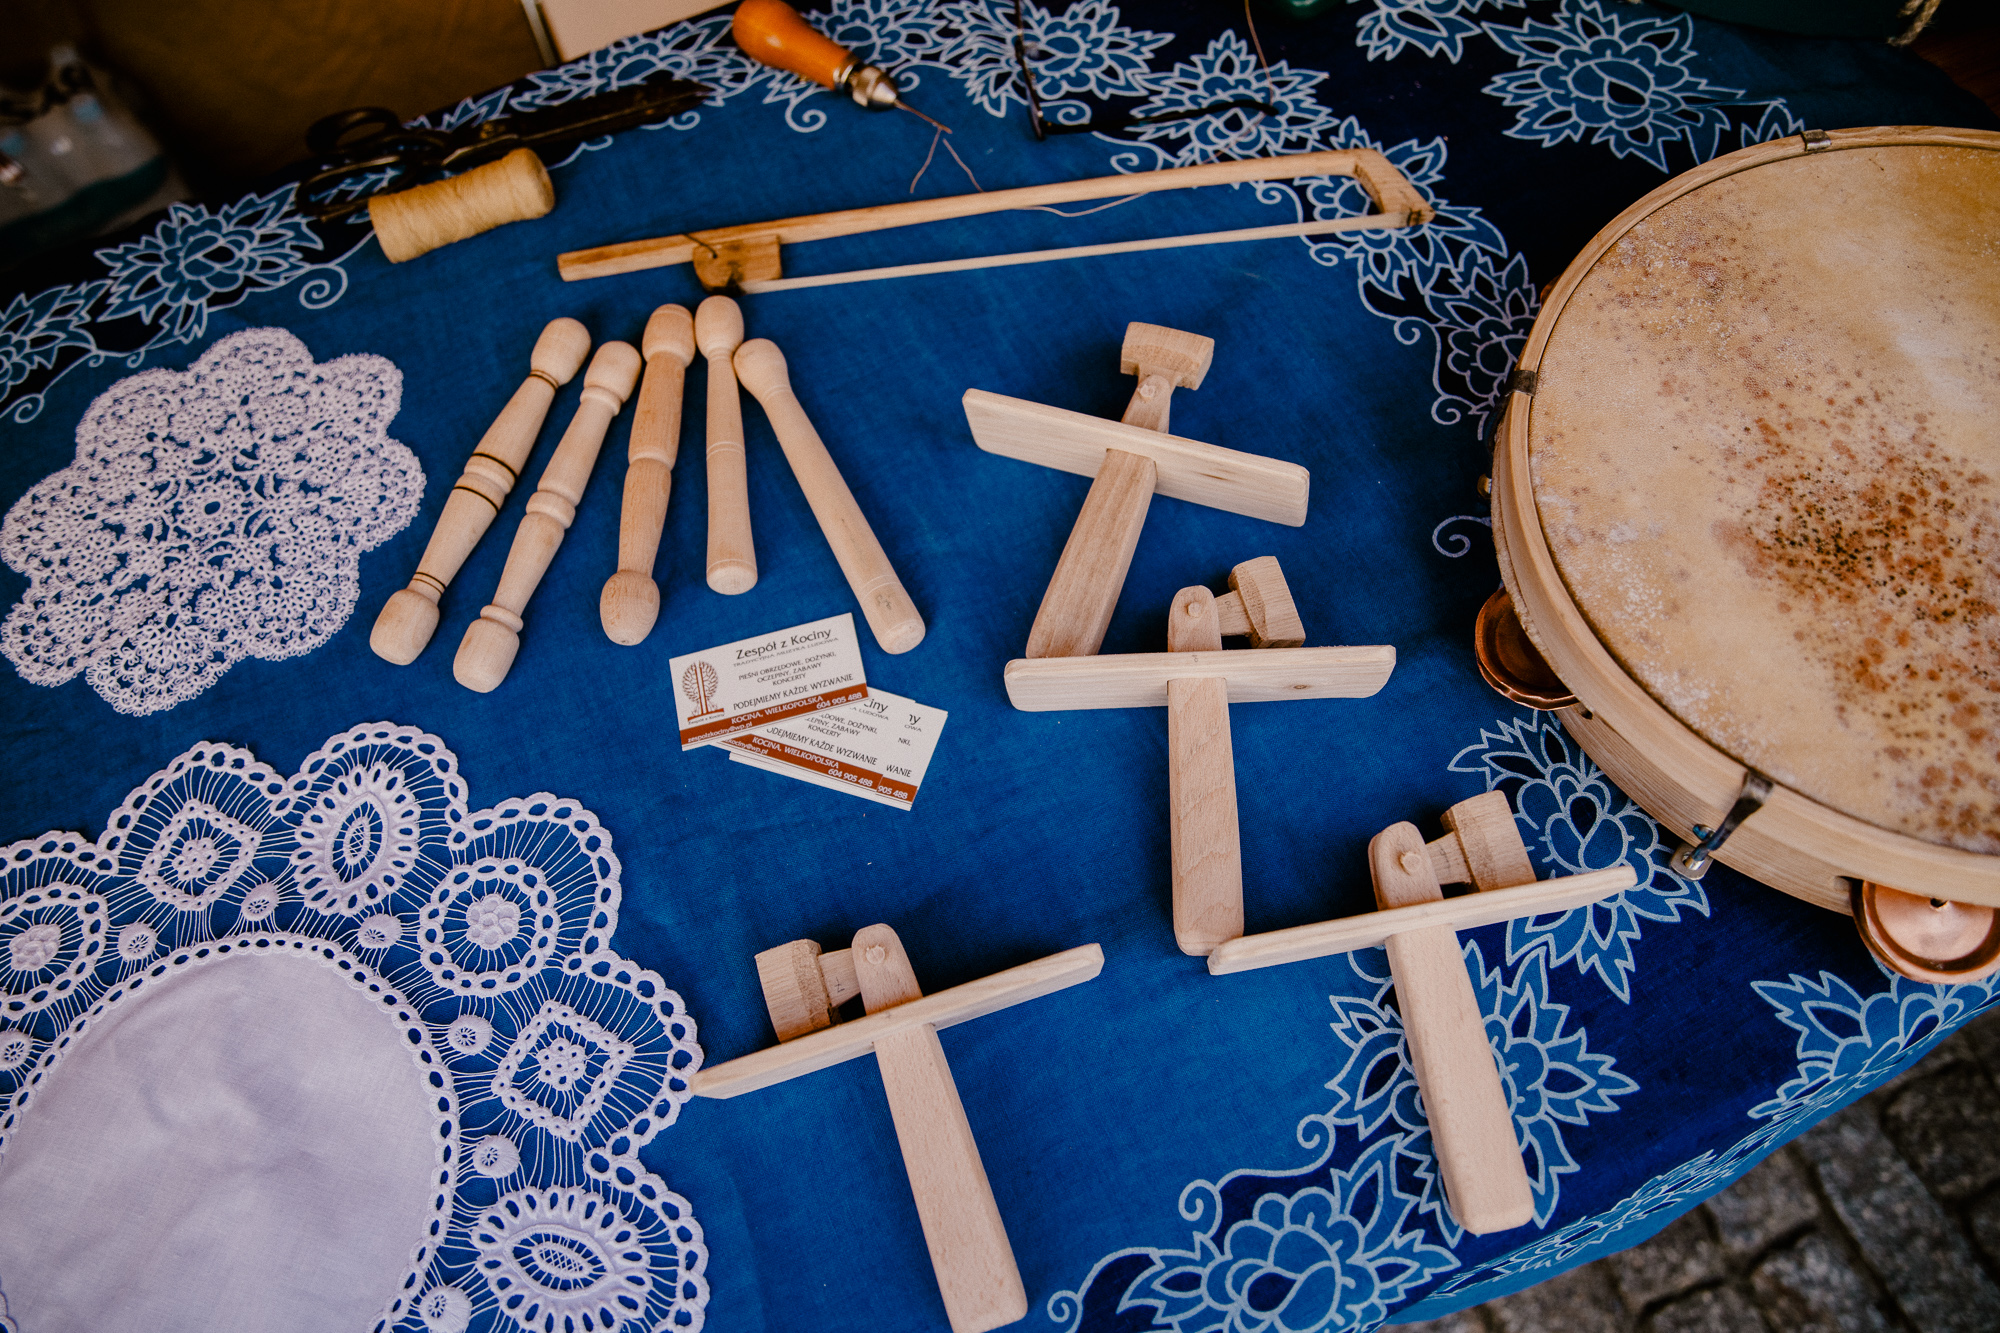 Drewniane instrumenty: tamburyno i kołatki oraz zrobione na szydełku serwetki.